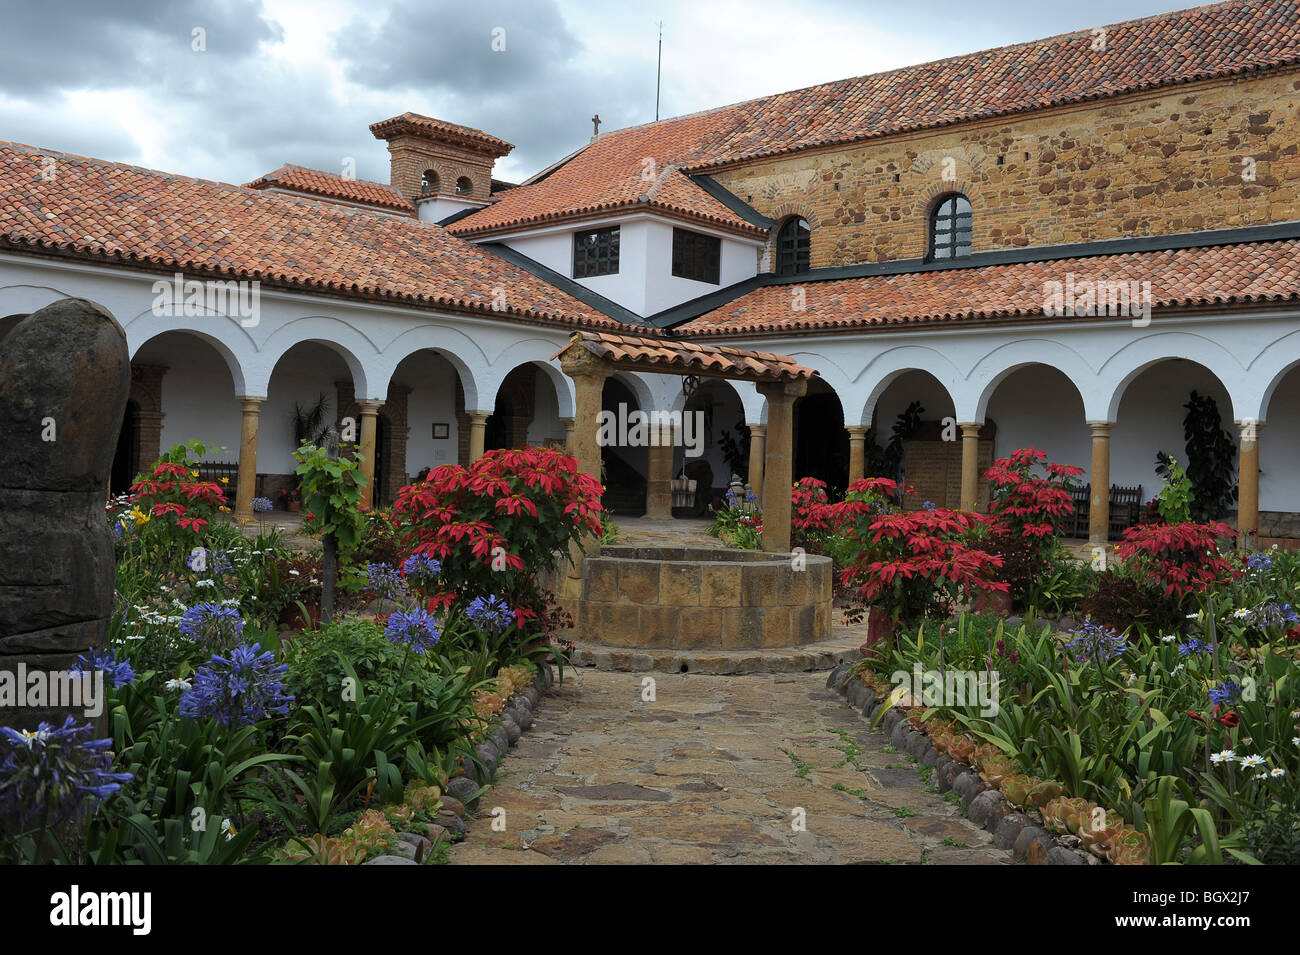 Convento de Santo Ecce Homo cour avec pierres taillée, des fleurs colorées et des chemins autour de puits central. Colombie Banque D'Images